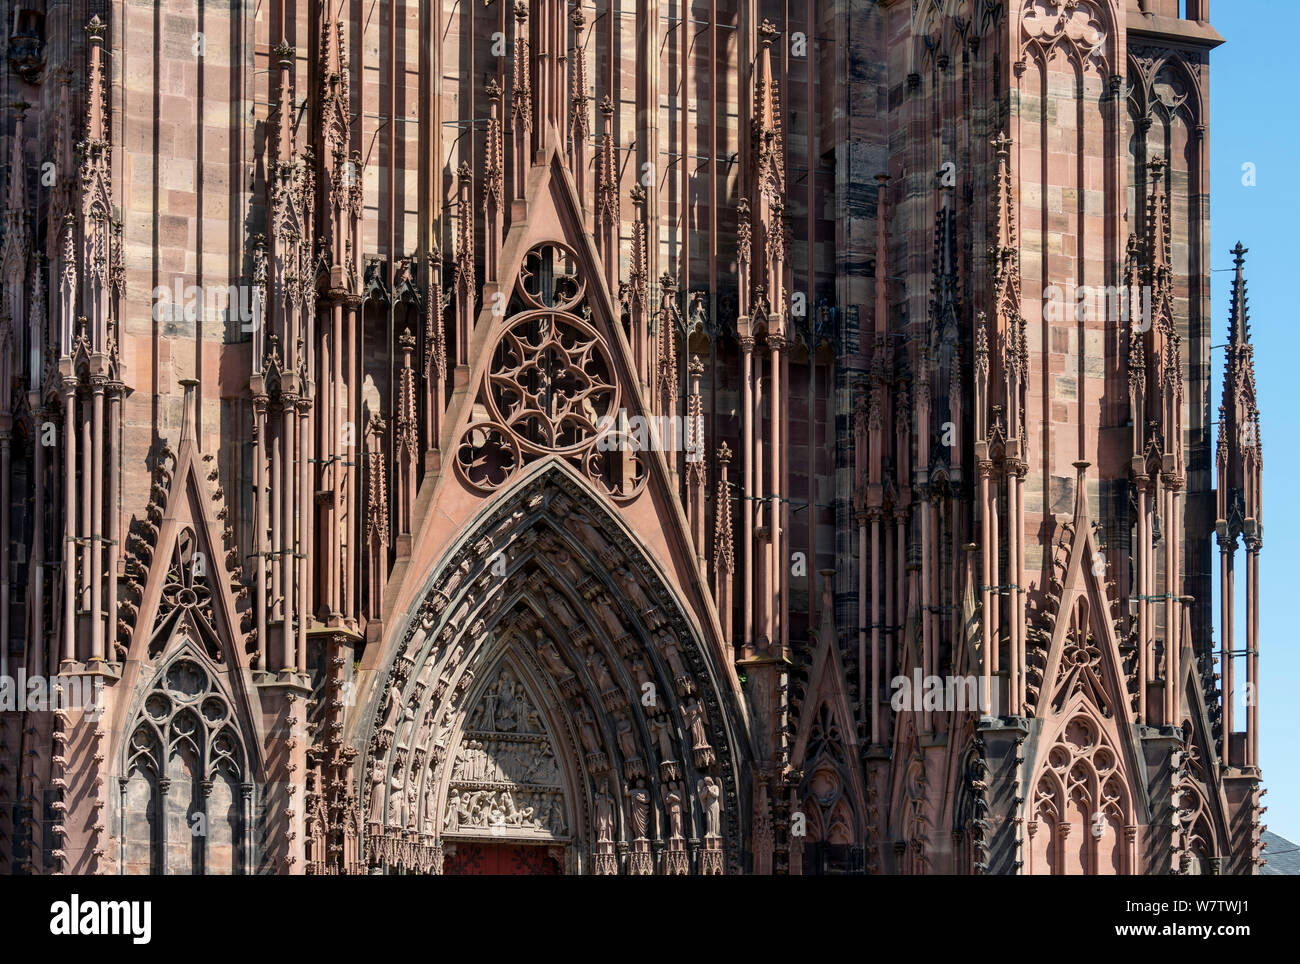 Straßburger Münster, Cathédrale Notre-dame de Strasbourg, Westfassade, Wimperge Foto Stock